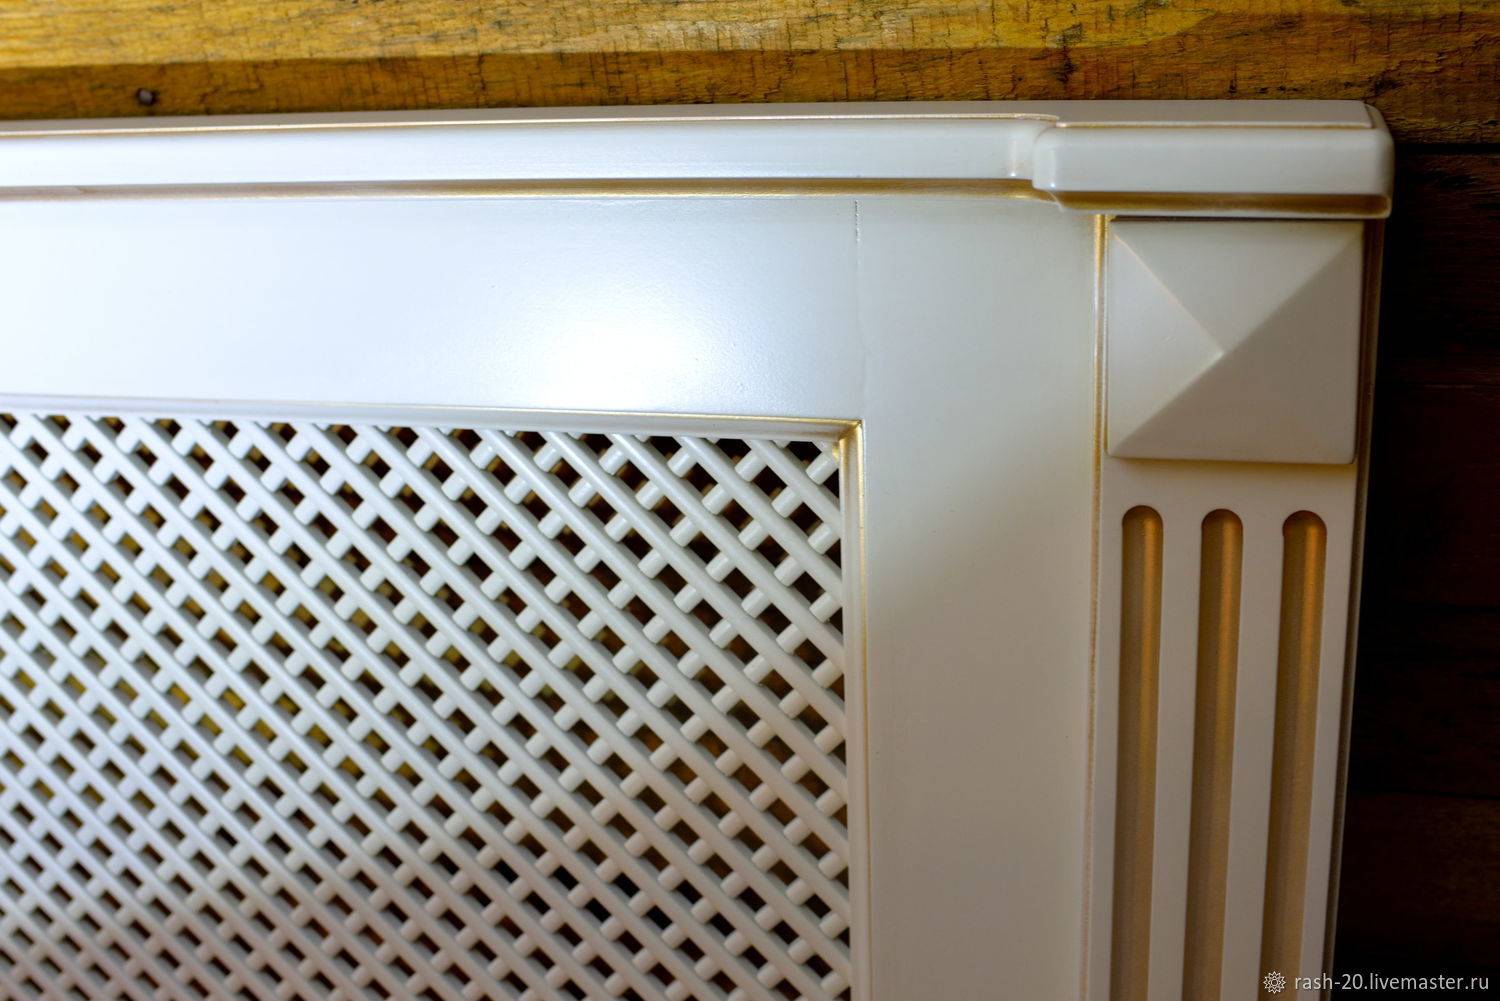 Декоративные решетки на радиаторы отопления - виды, особенности